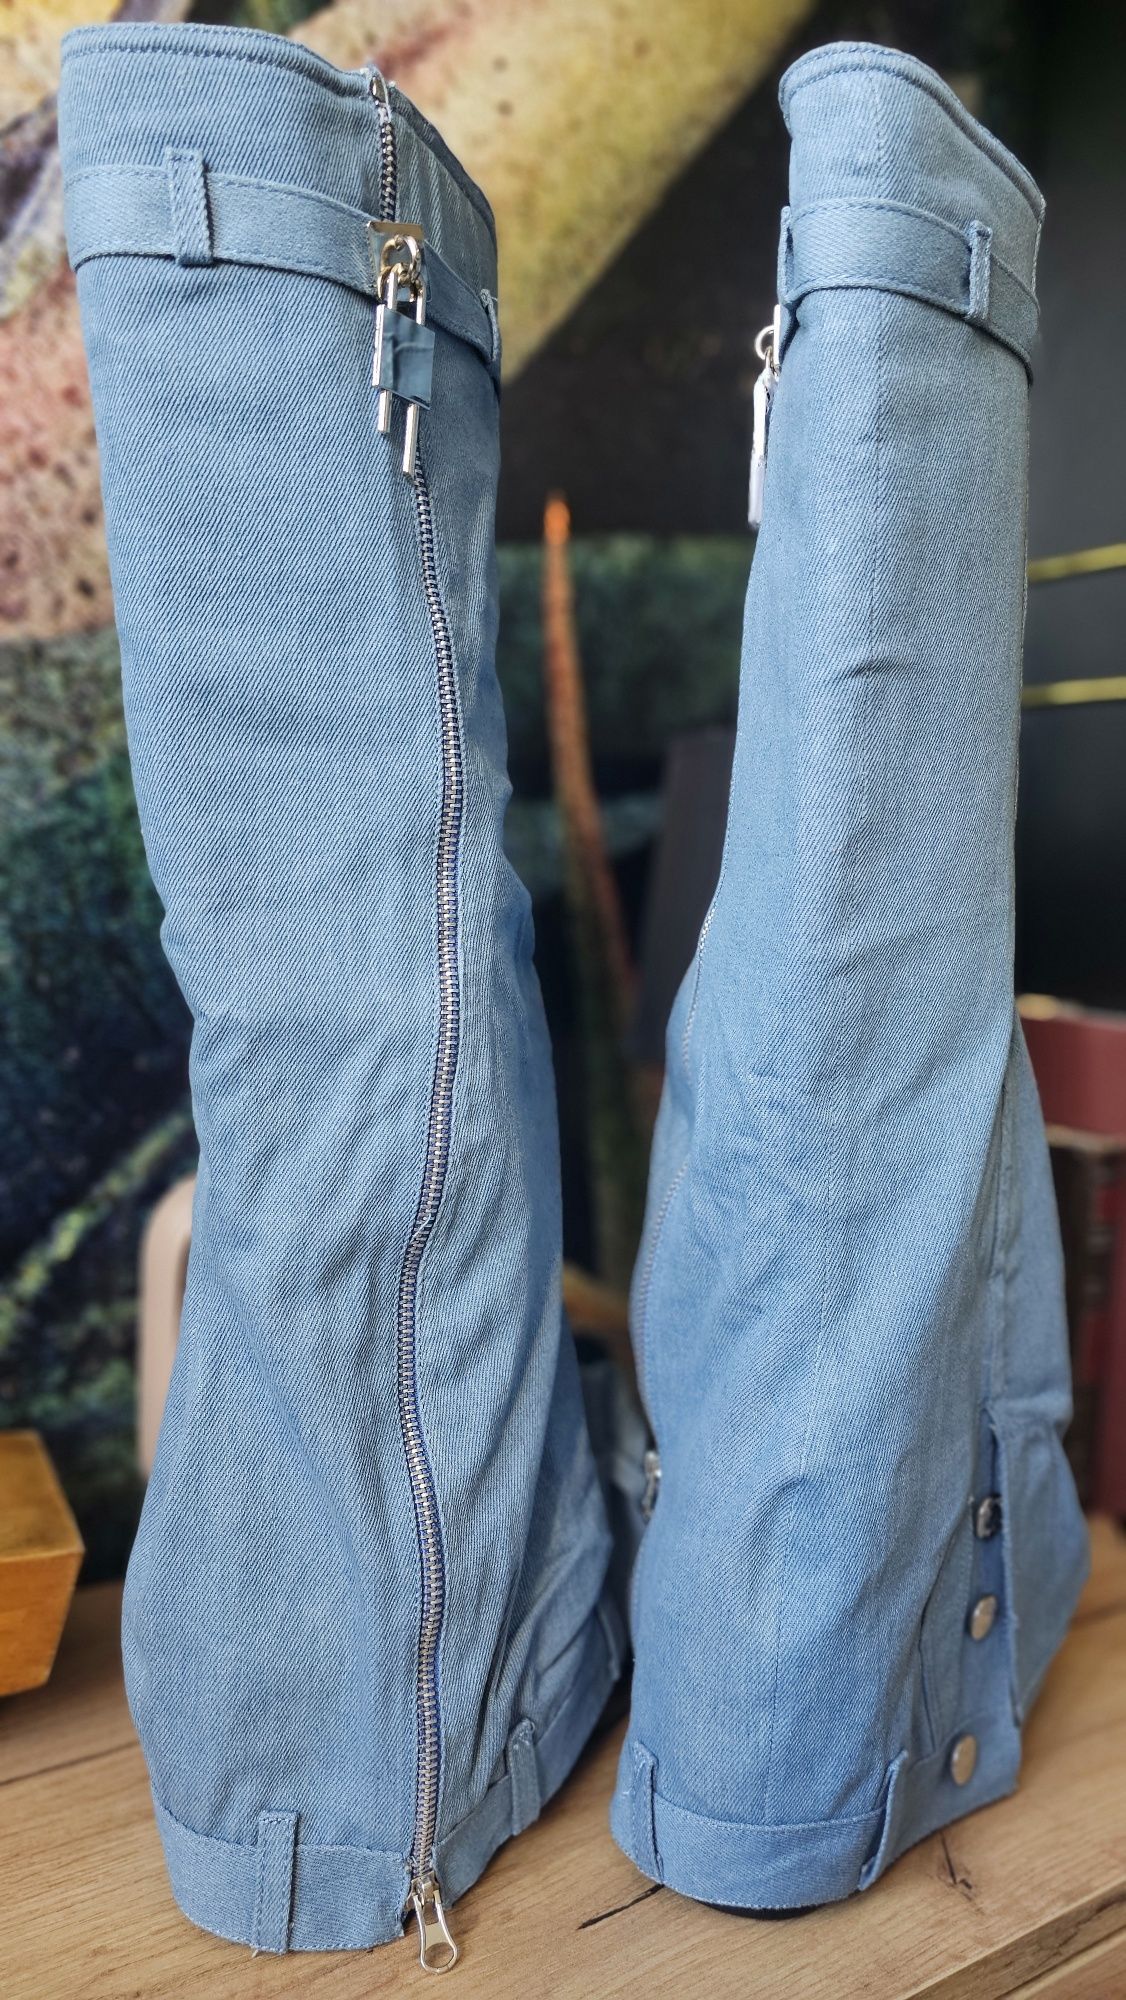 Cudowne nowe kozaki Jeansowe jeans na koturnie petarda 39